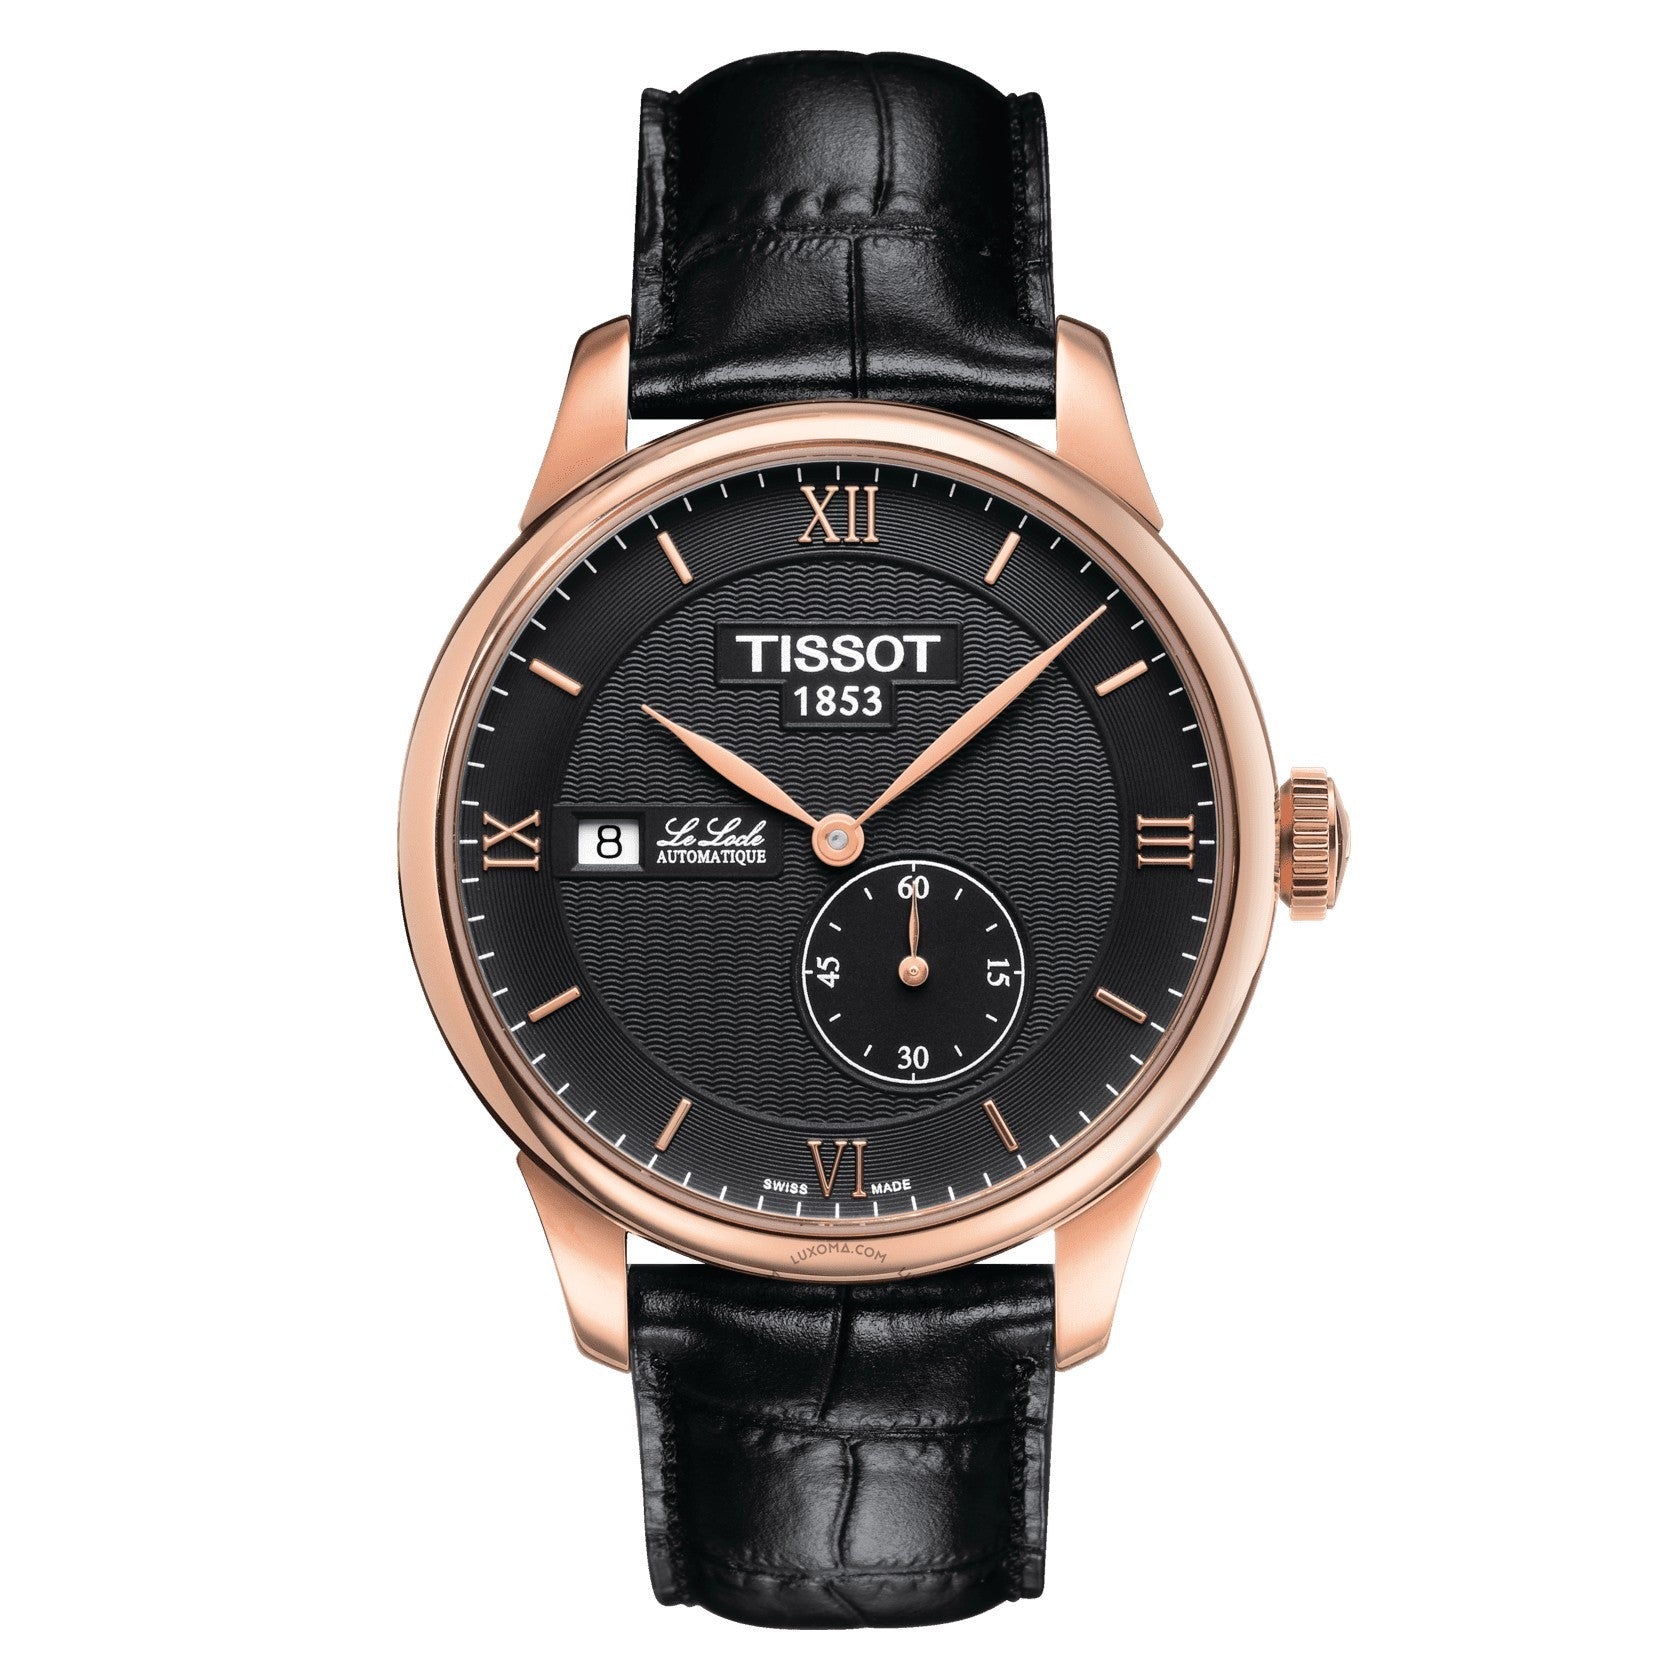 Tissot Le Locle Automatic Black Dial Men's Watch T006.428.36.058.00